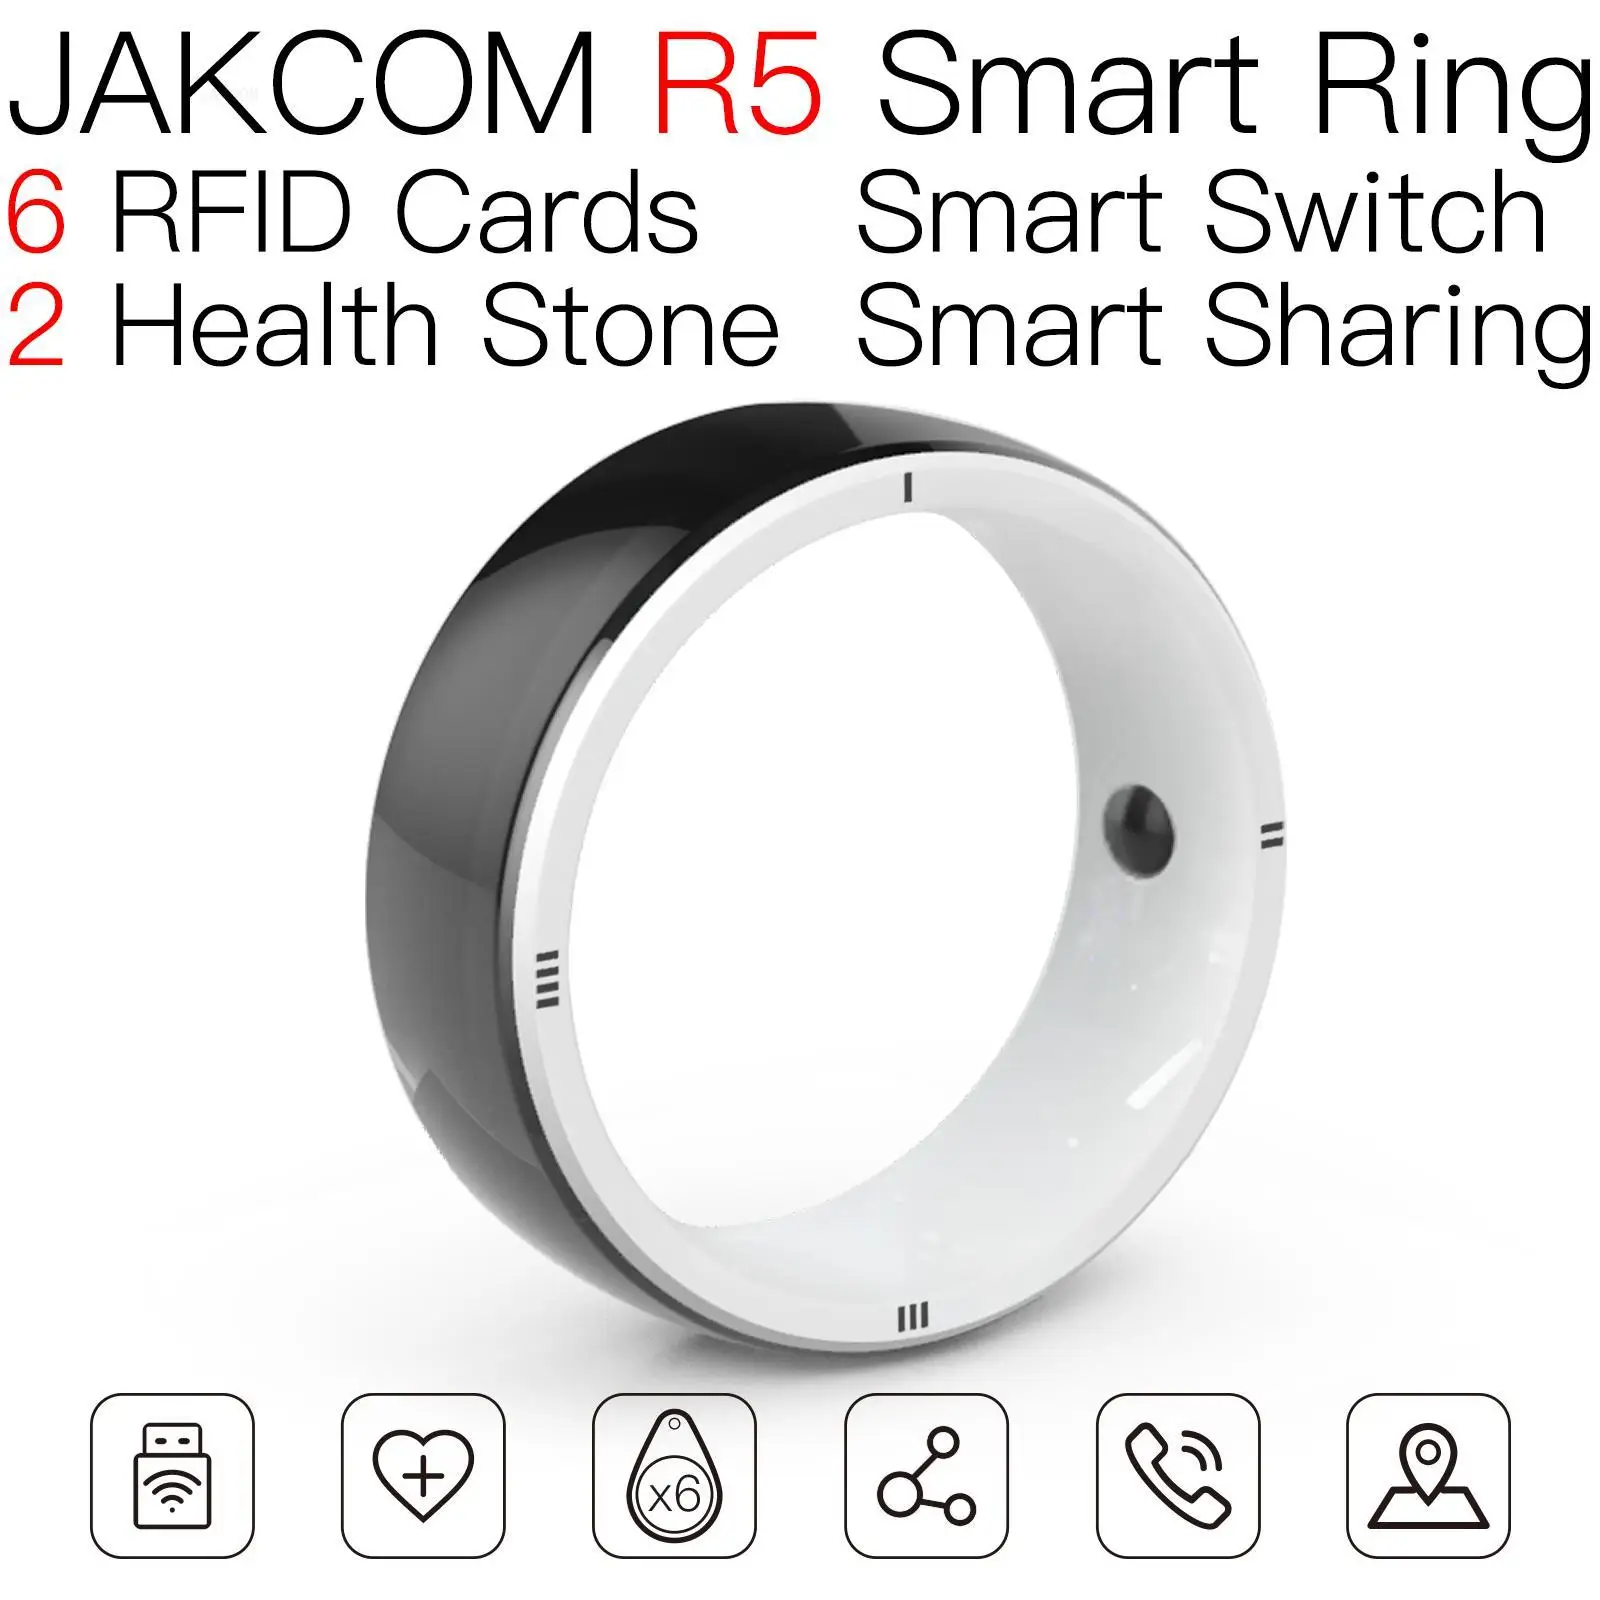 

Смарт-кольцо JAKCOM R5, новый продукт, меток благодарности 14443a pg105 micro rfid, карта контроля доступа 125 кГц, carte horizon julie animol